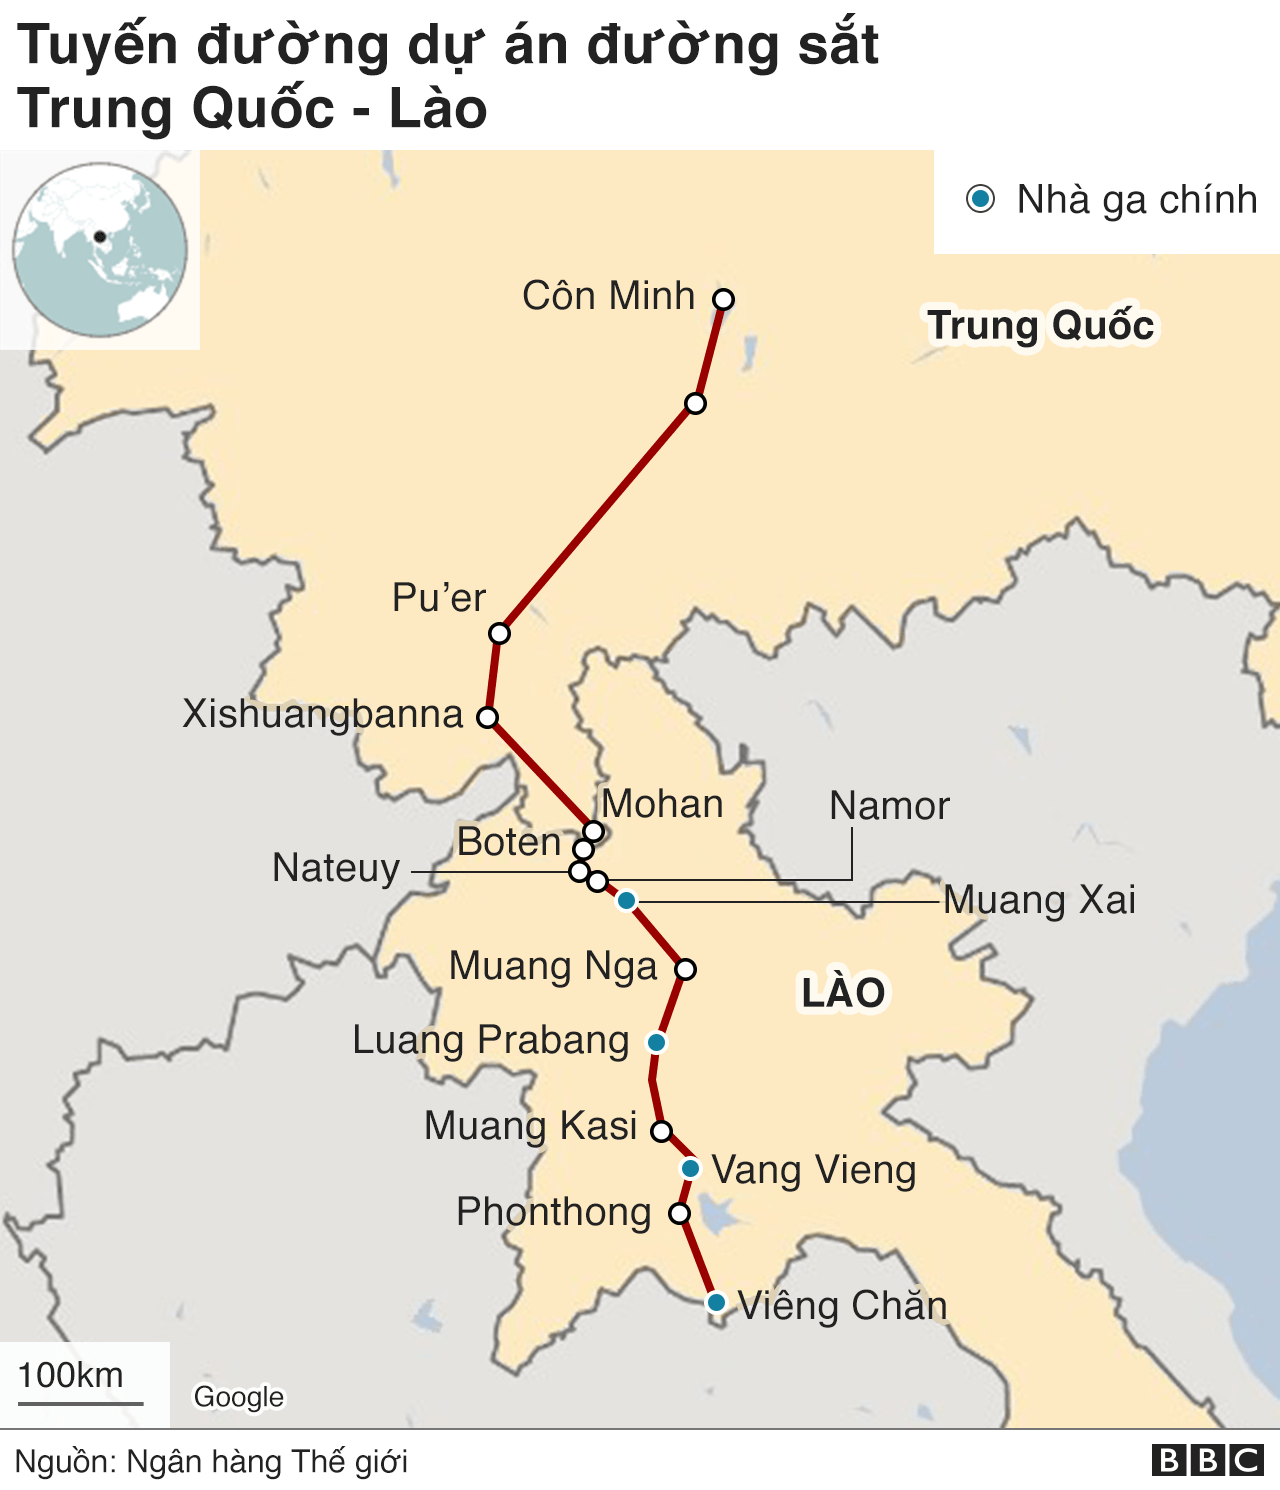 Đường sắt cao tốc đã được xây dựng và đi vào hoạt động, giúp đưa những người dân đi lại giữa các thành phố lớn dễ dàng hơn bao giờ hết. Dịch vụ cao cấp, tiện lợi và an toàn của đường sắt cao tốc đã thu hút nhiều lượt khách hàng sử dụng và được đánh giá là một trong những hạ tầng giao thông tốt nhất tại Việt Nam.